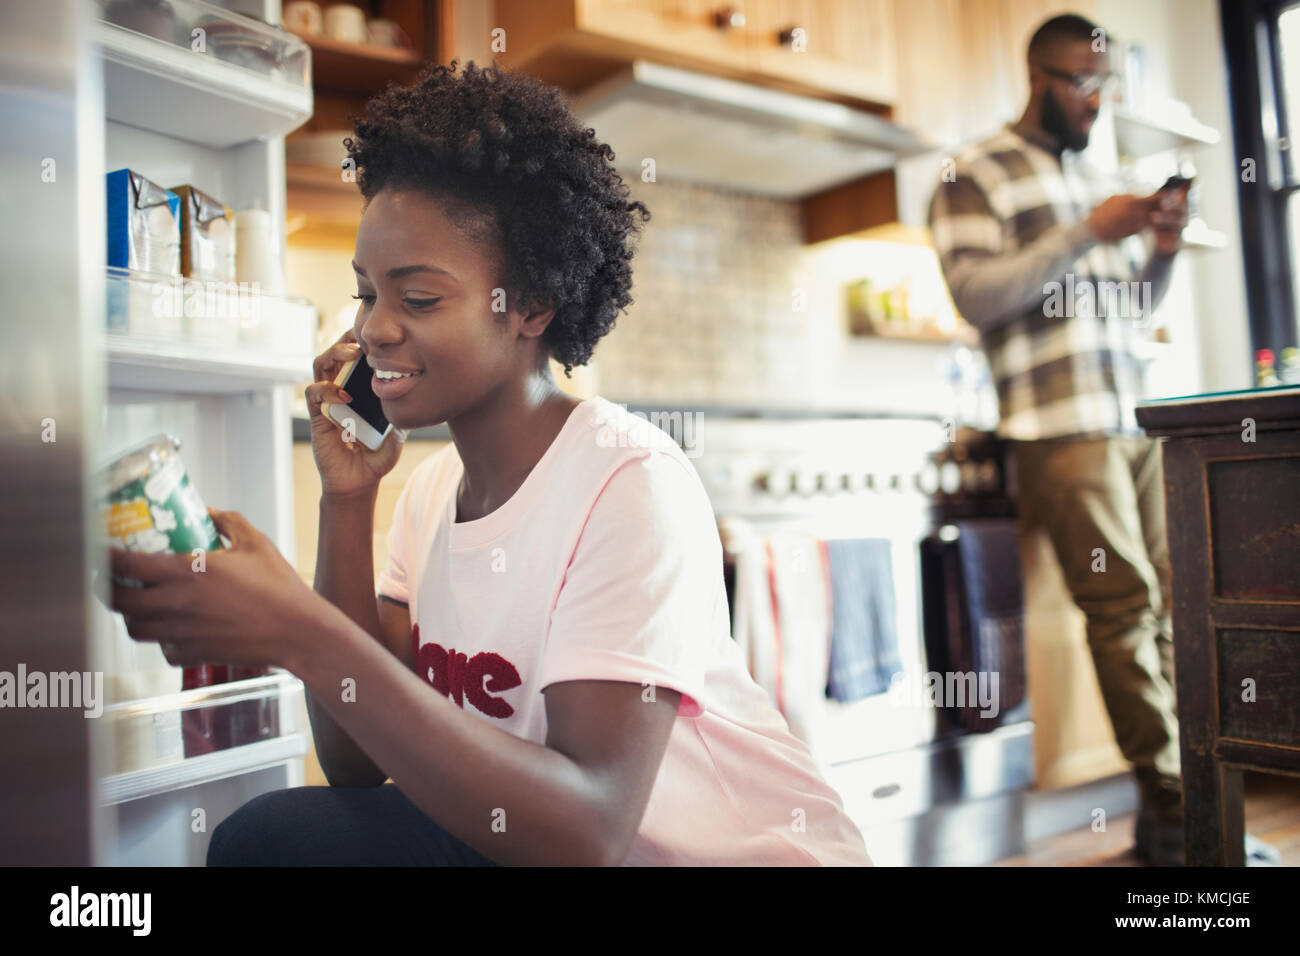 Femme parlant sur un smartphone, lisant l'étiquette sur le pot dans le réfrigérateur dans la cuisine Banque D'Images